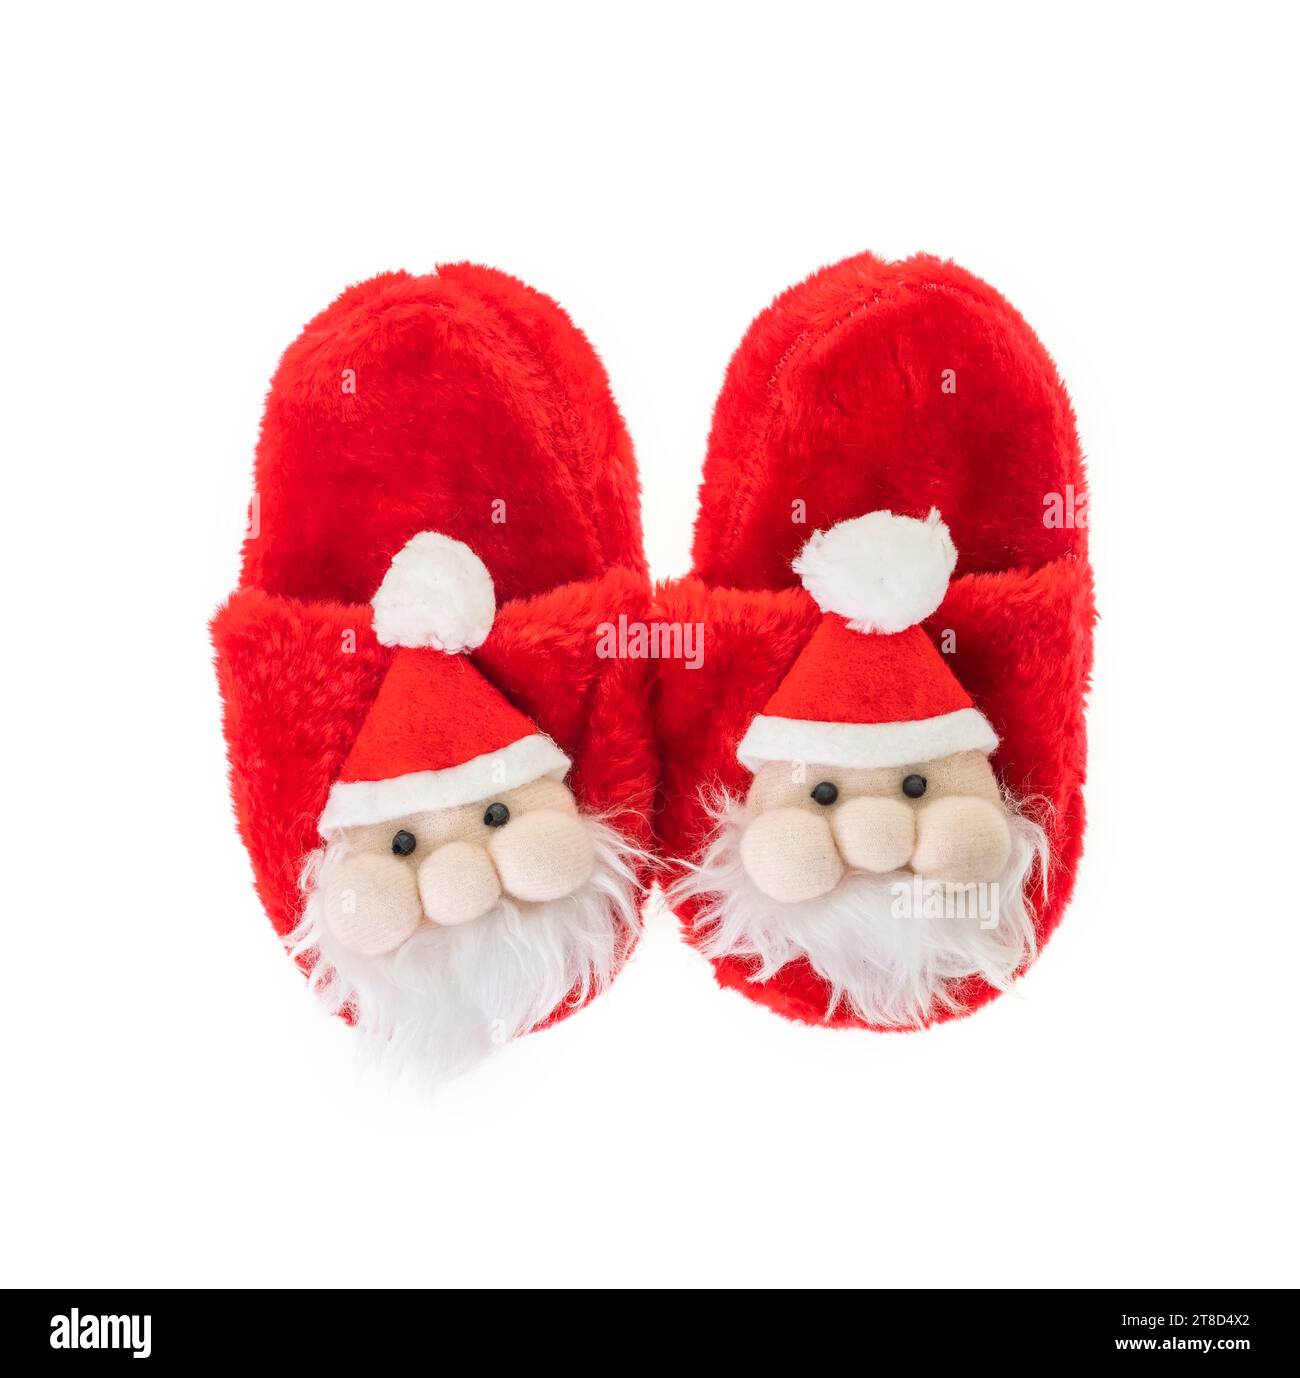 Pantofole per il Capodanno per bambini sotto forma di Babbo Natale. Accessori e regali di Natale tradizionali per le feste. Foto Stock